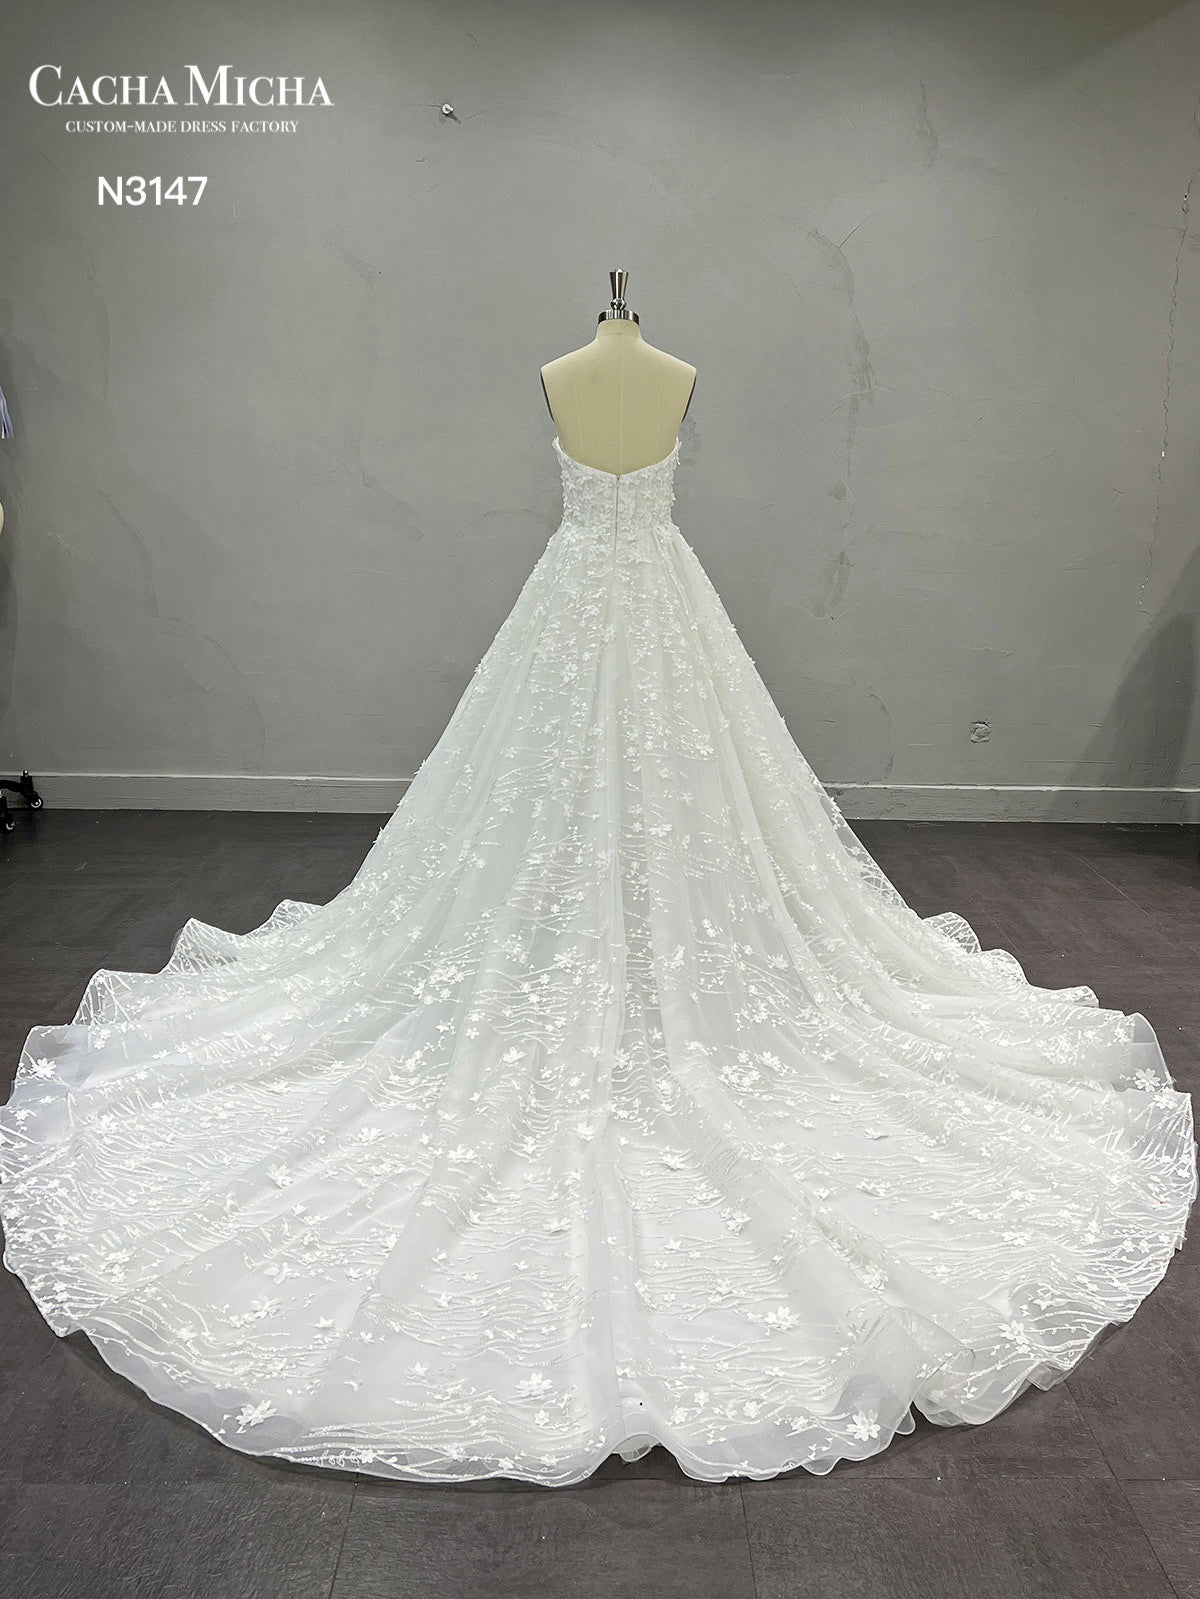 Handmade 3D Flowers Lace Ball Gown Wedding Dress N3147